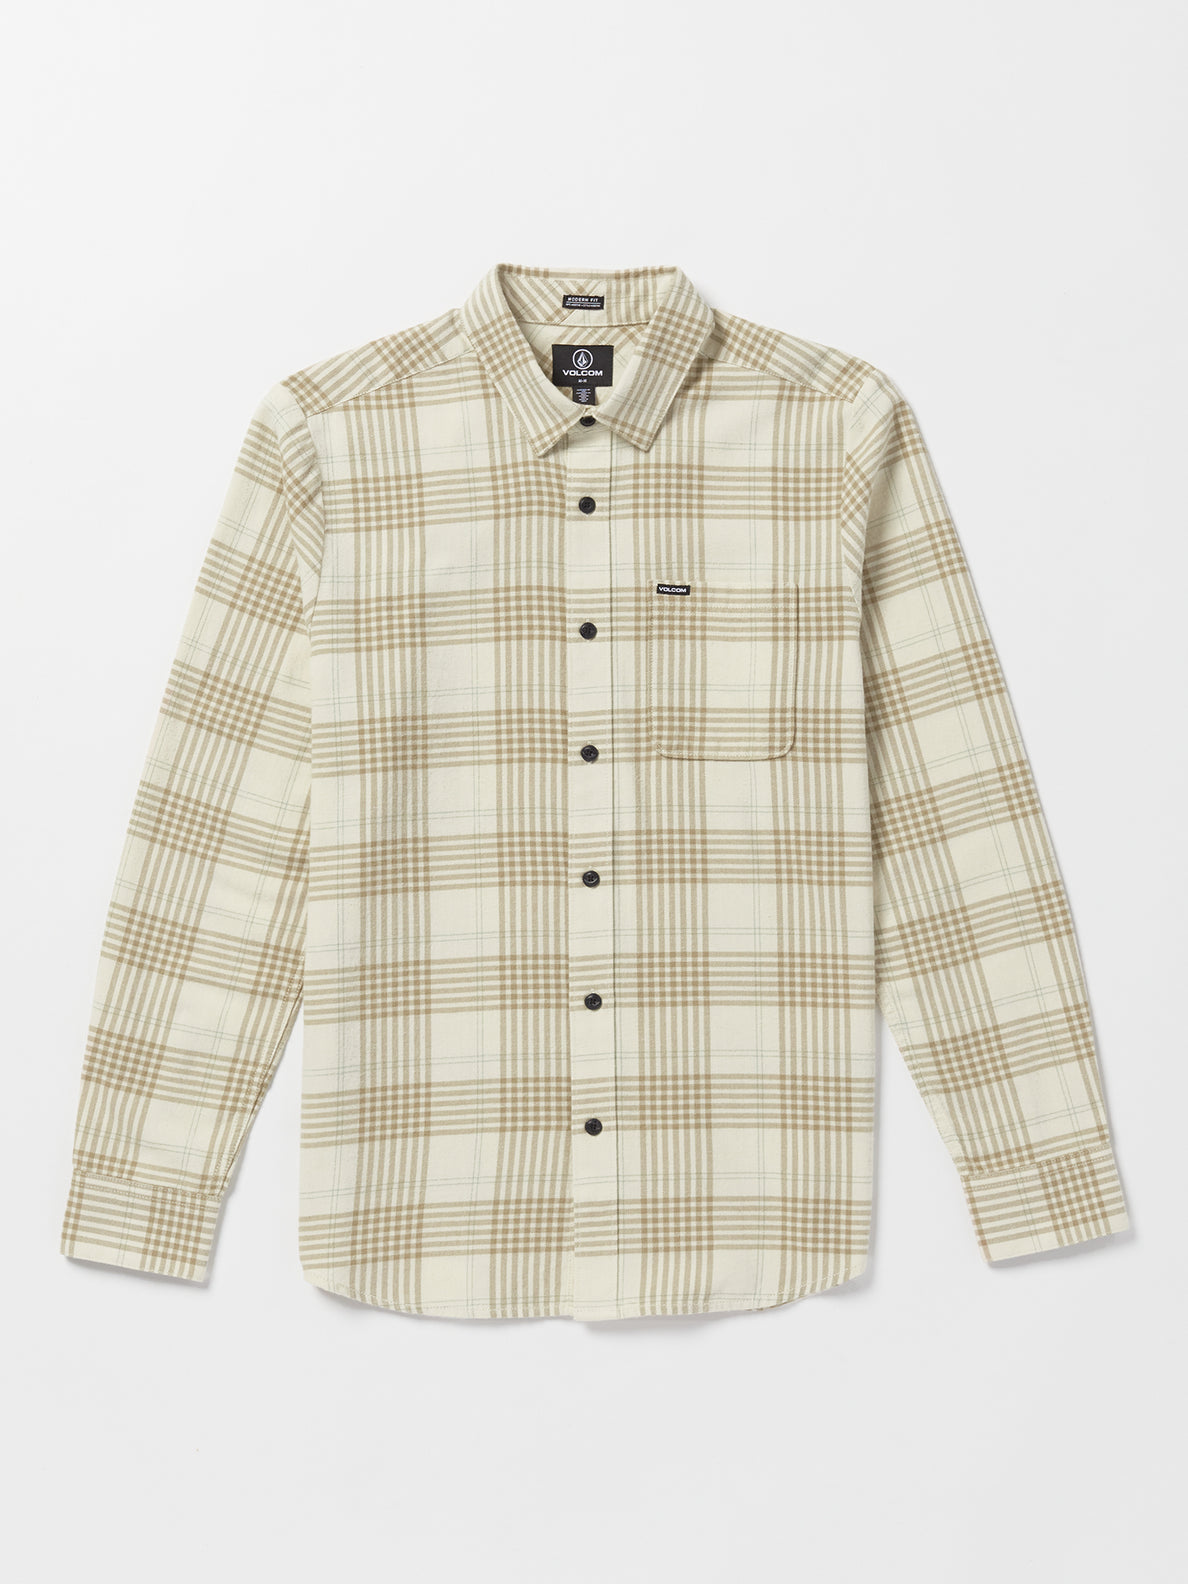 Caden Plaid Long Sleeve Shirt - Dirty White (A0532303_DWH) [F]